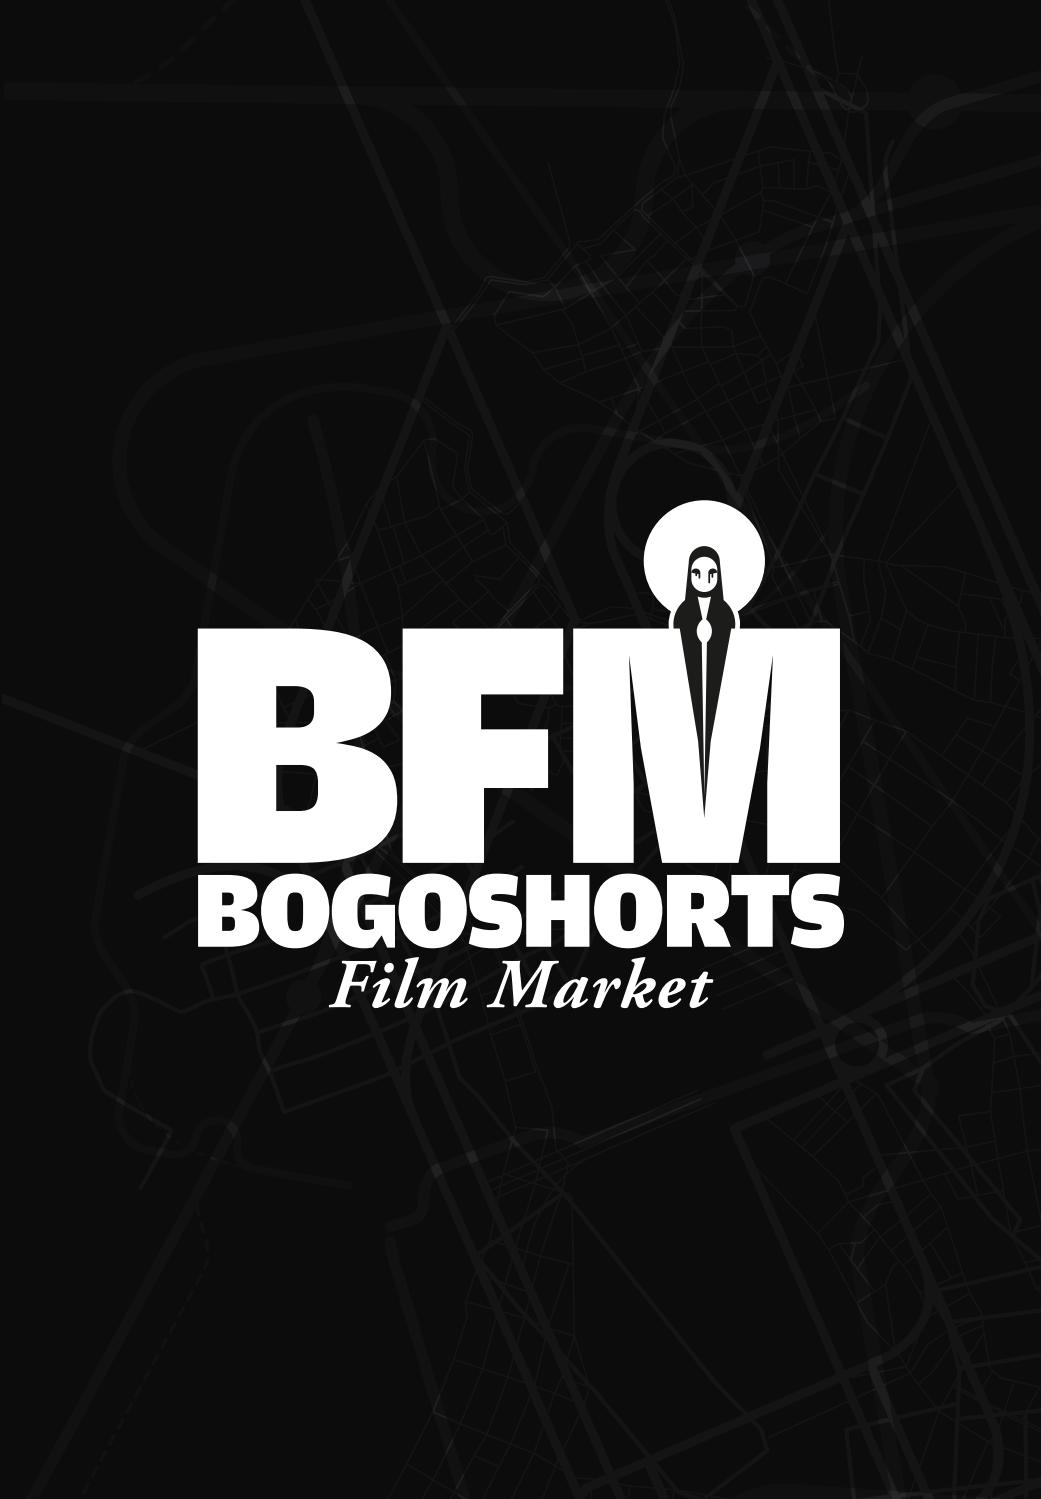 Están abiertas las convocatorias del 5° Bogoshorts Film Market